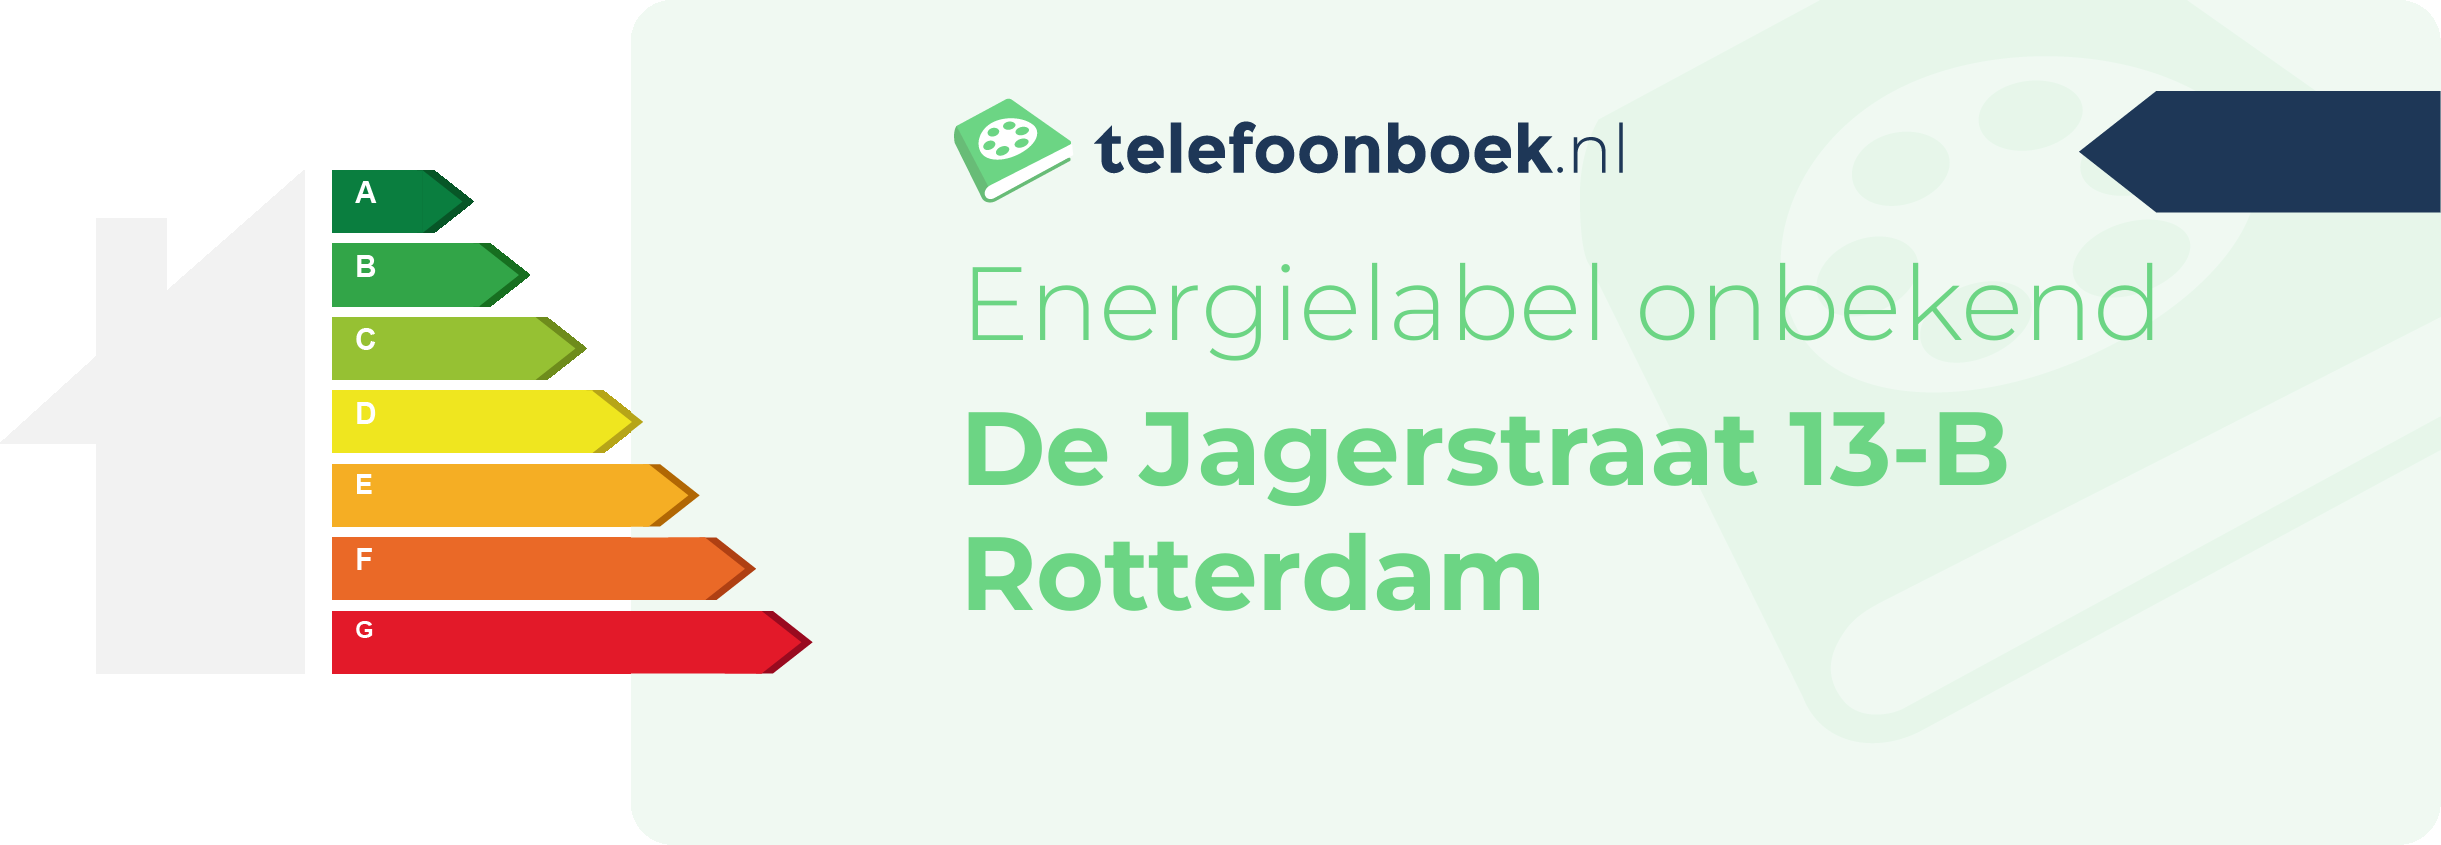 Energielabel De Jagerstraat 13-B Rotterdam